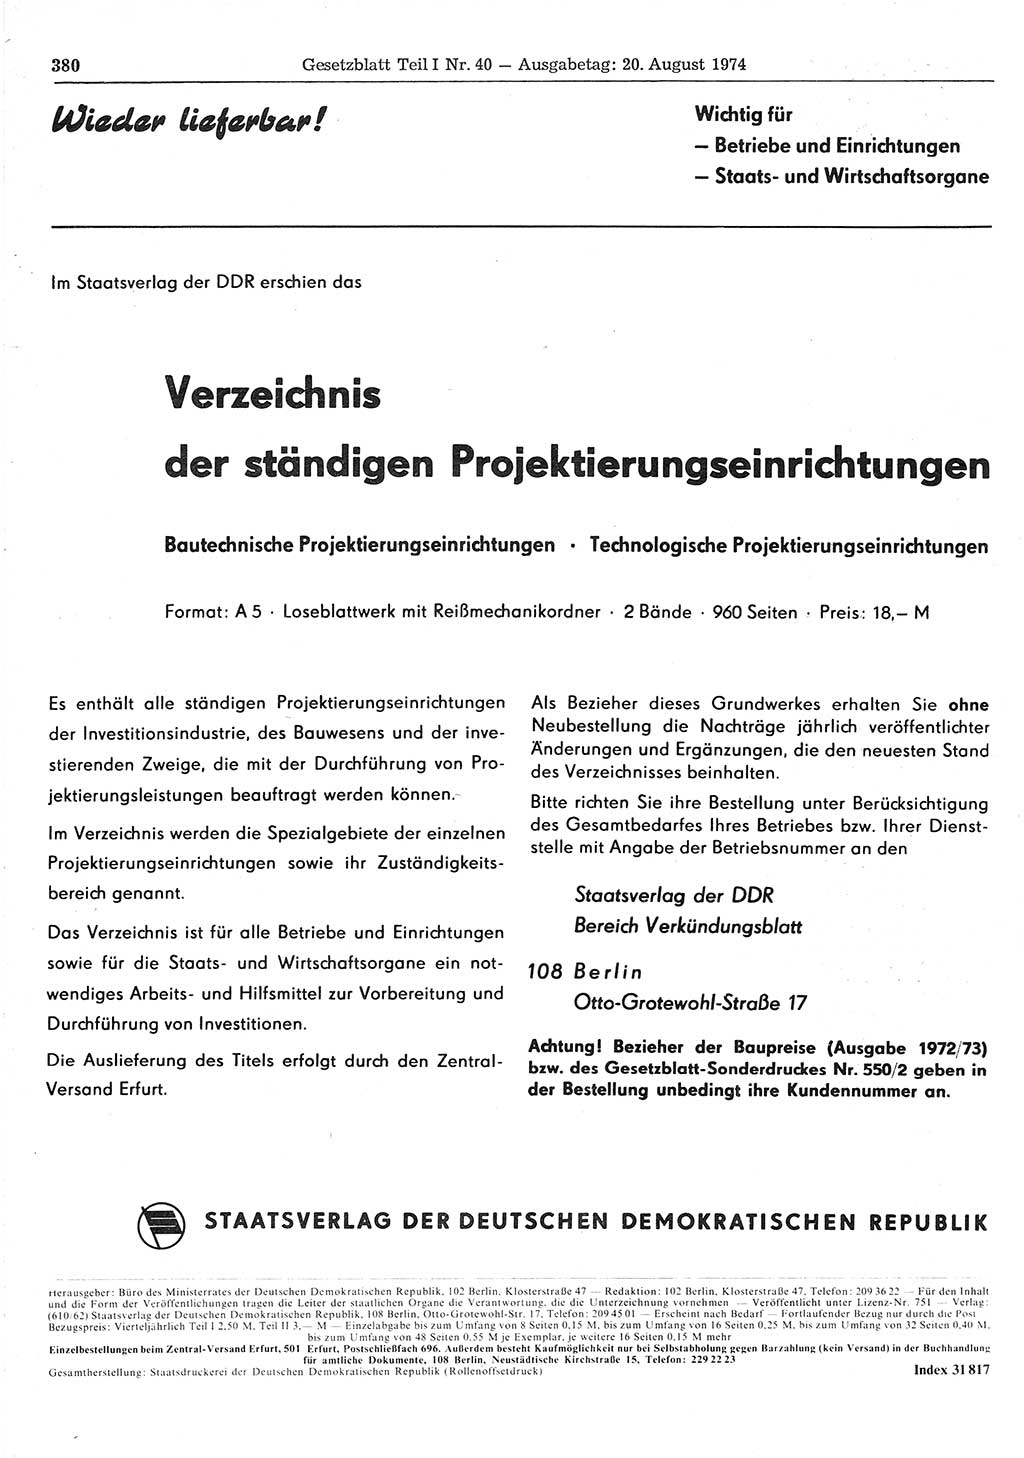 Gesetzblatt (GBl.) der Deutschen Demokratischen Republik (DDR) Teil Ⅰ 1974, Seite 380 (GBl. DDR Ⅰ 1974, S. 380)